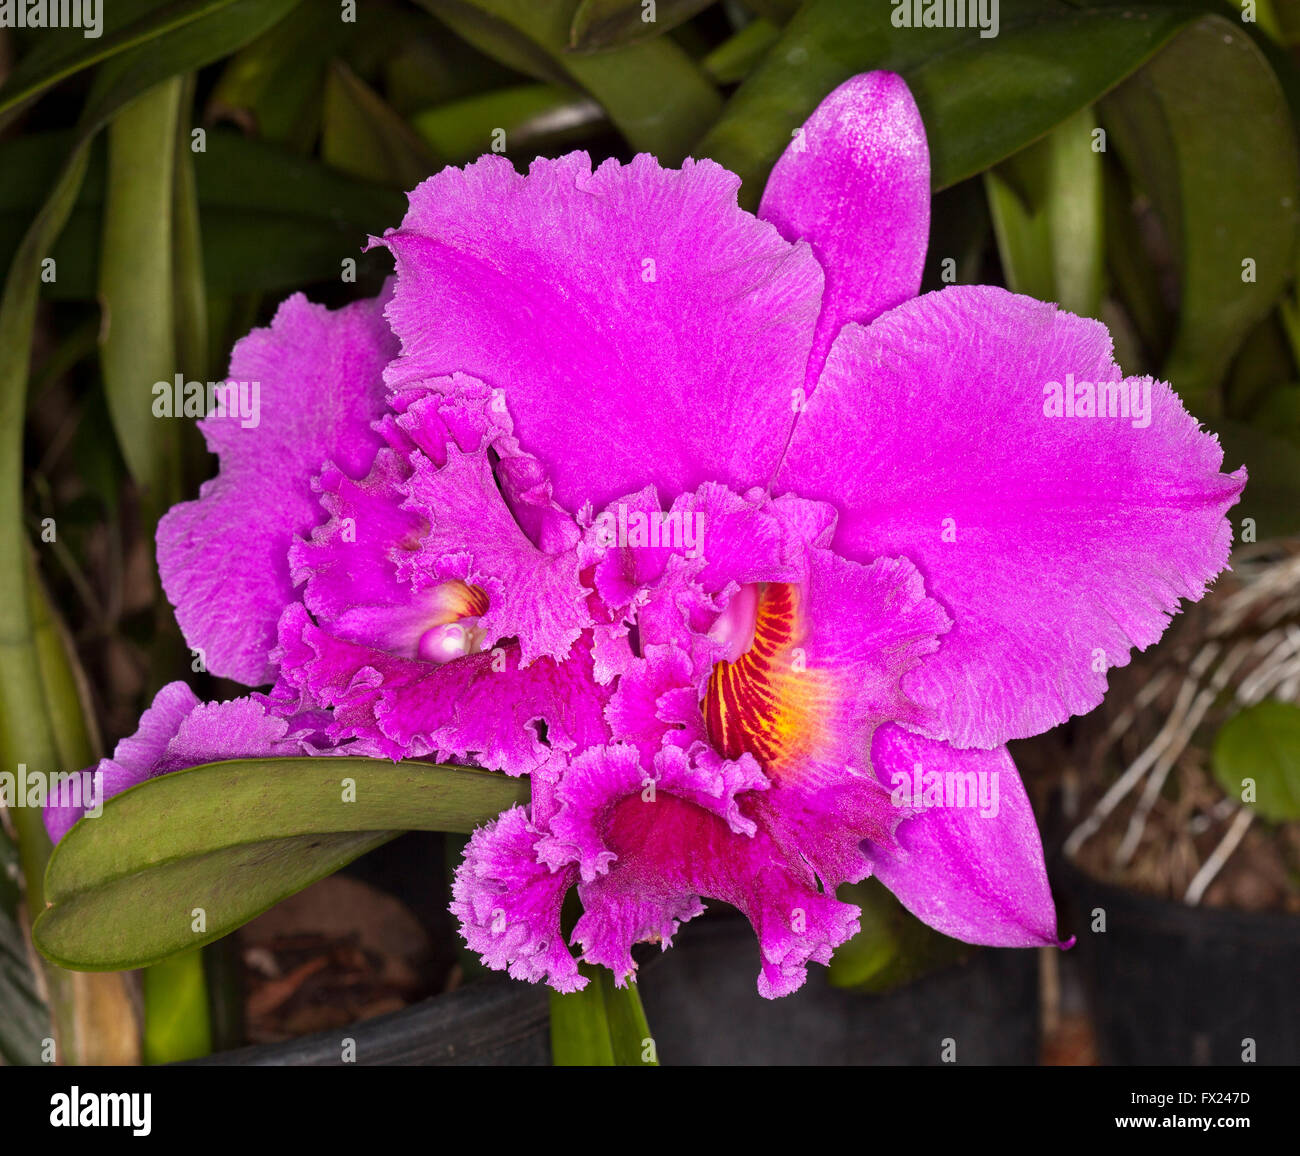 Spettacolare grande vivid magenta rosa / viola fiore profumato di cattleya orchid con frilly orlato a petali su sfondo scuro Foto Stock